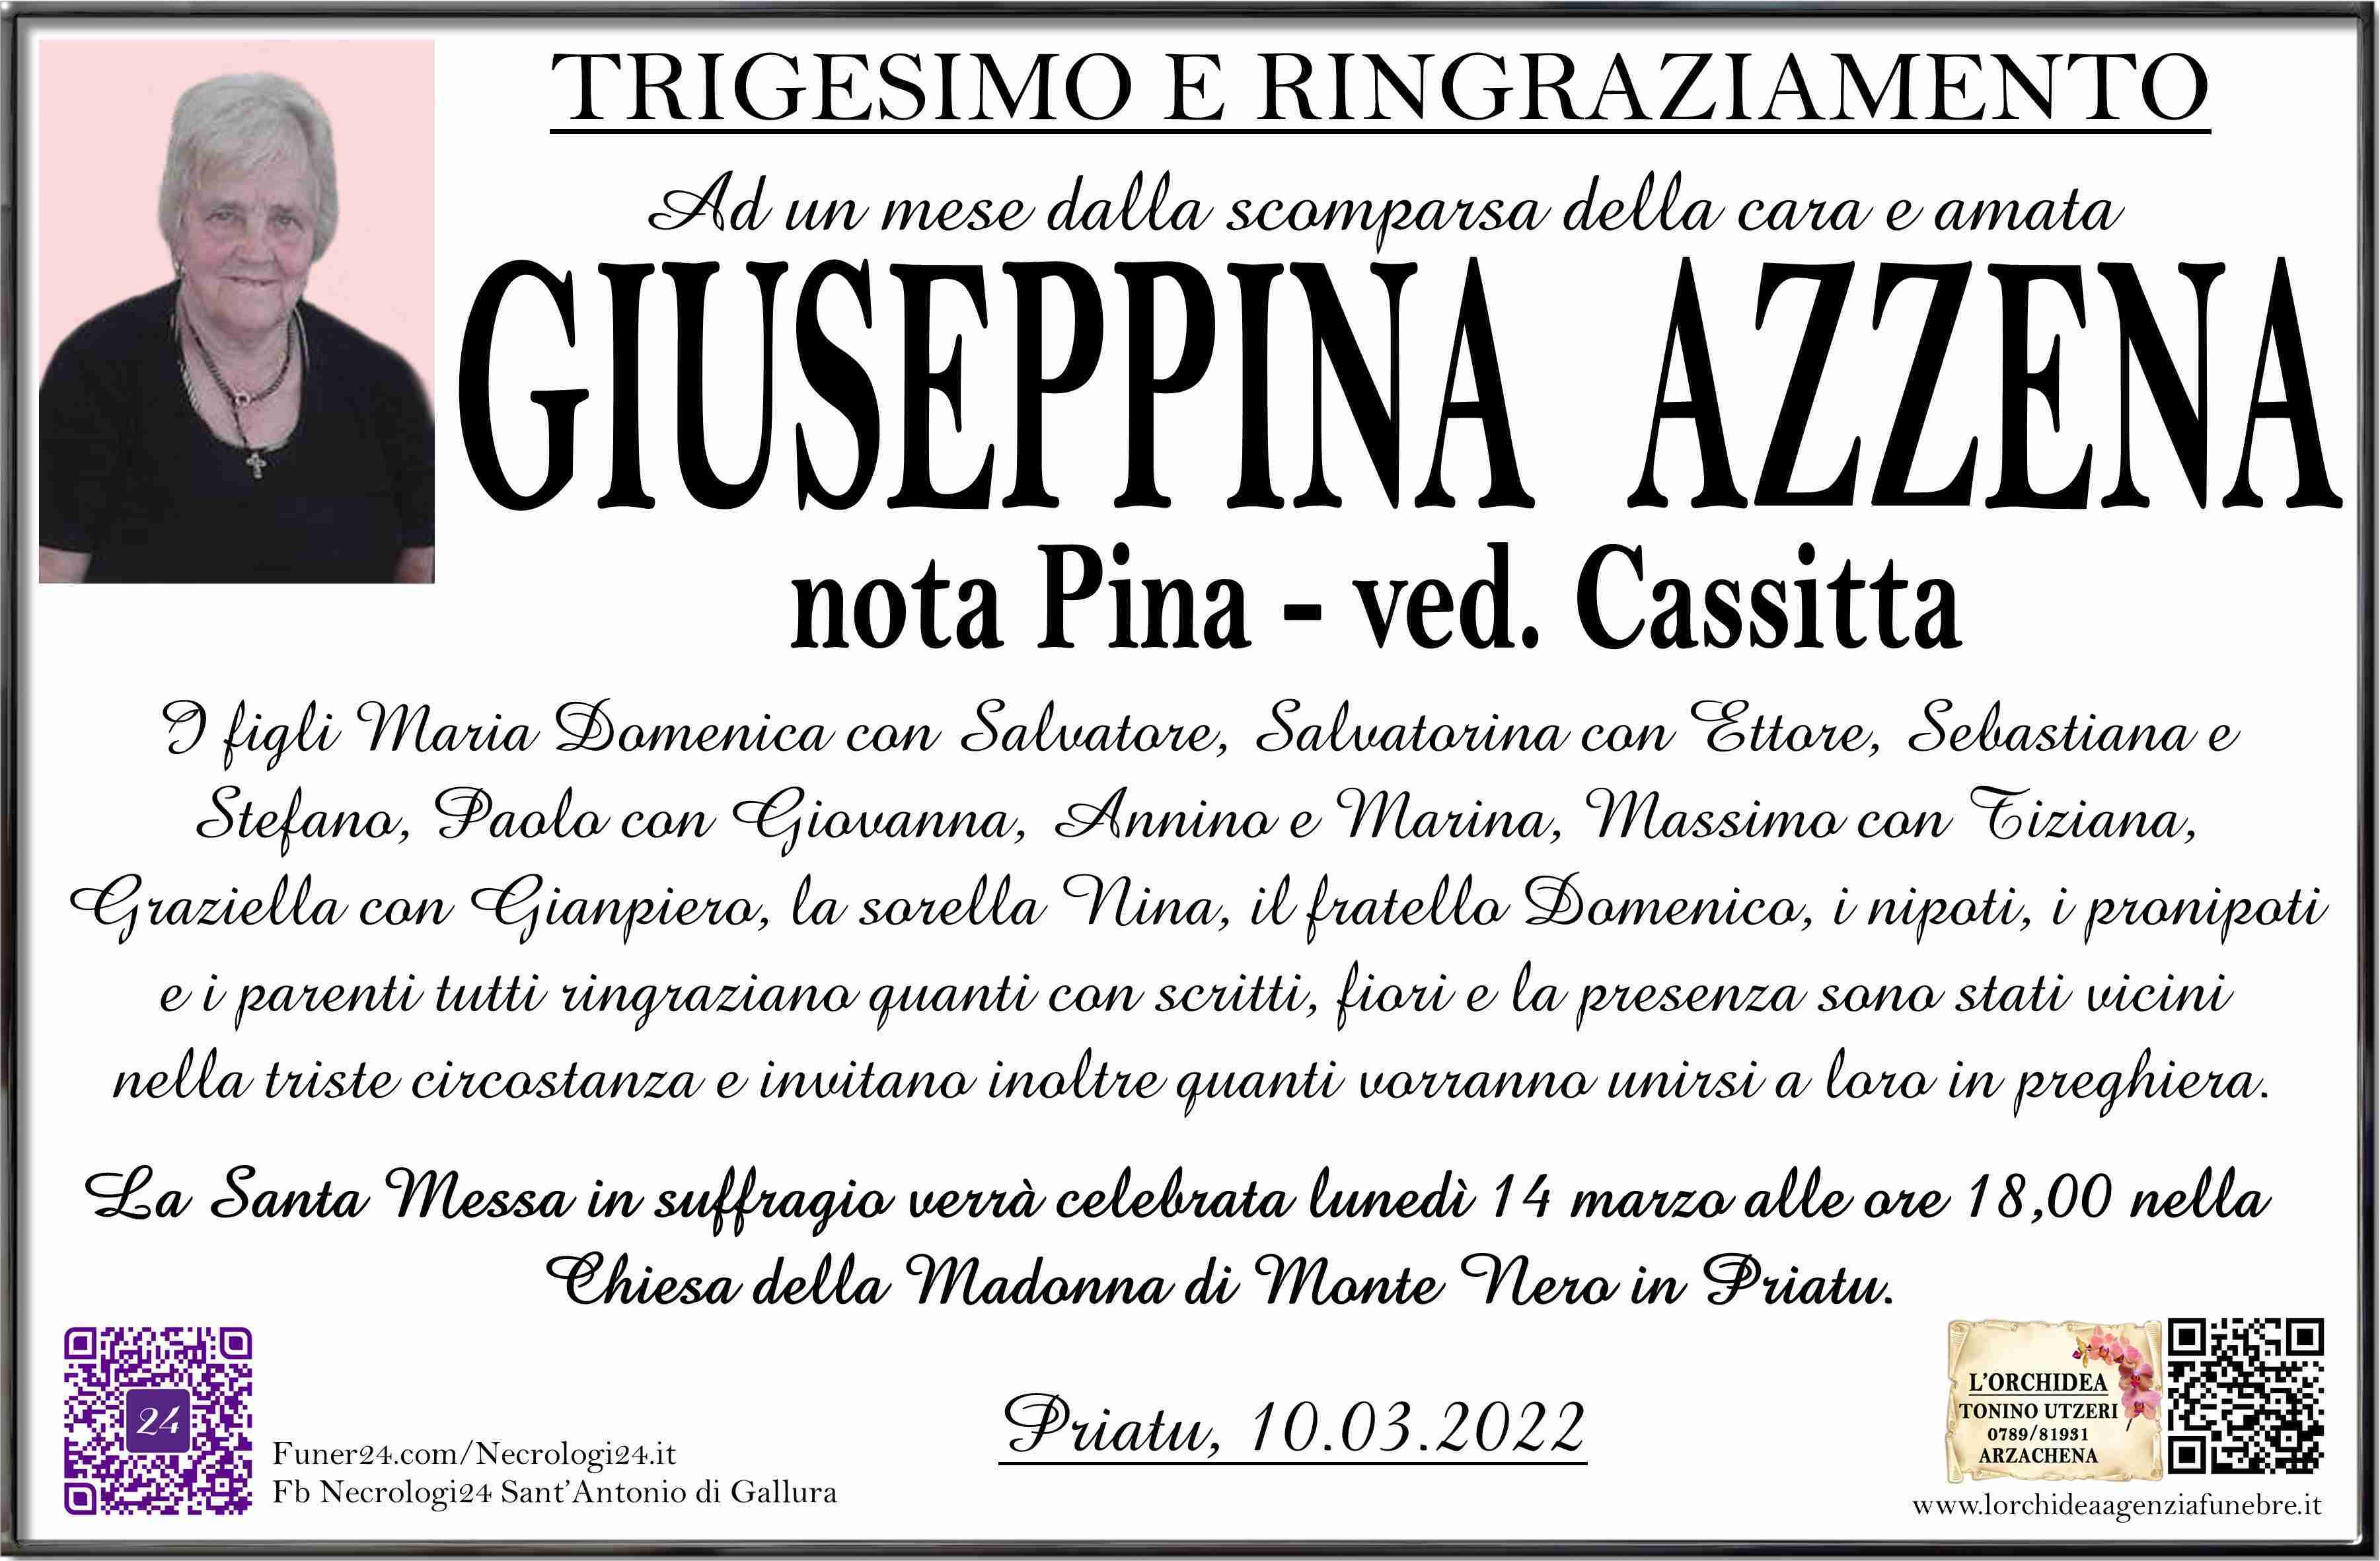 Giuseppina Azzena